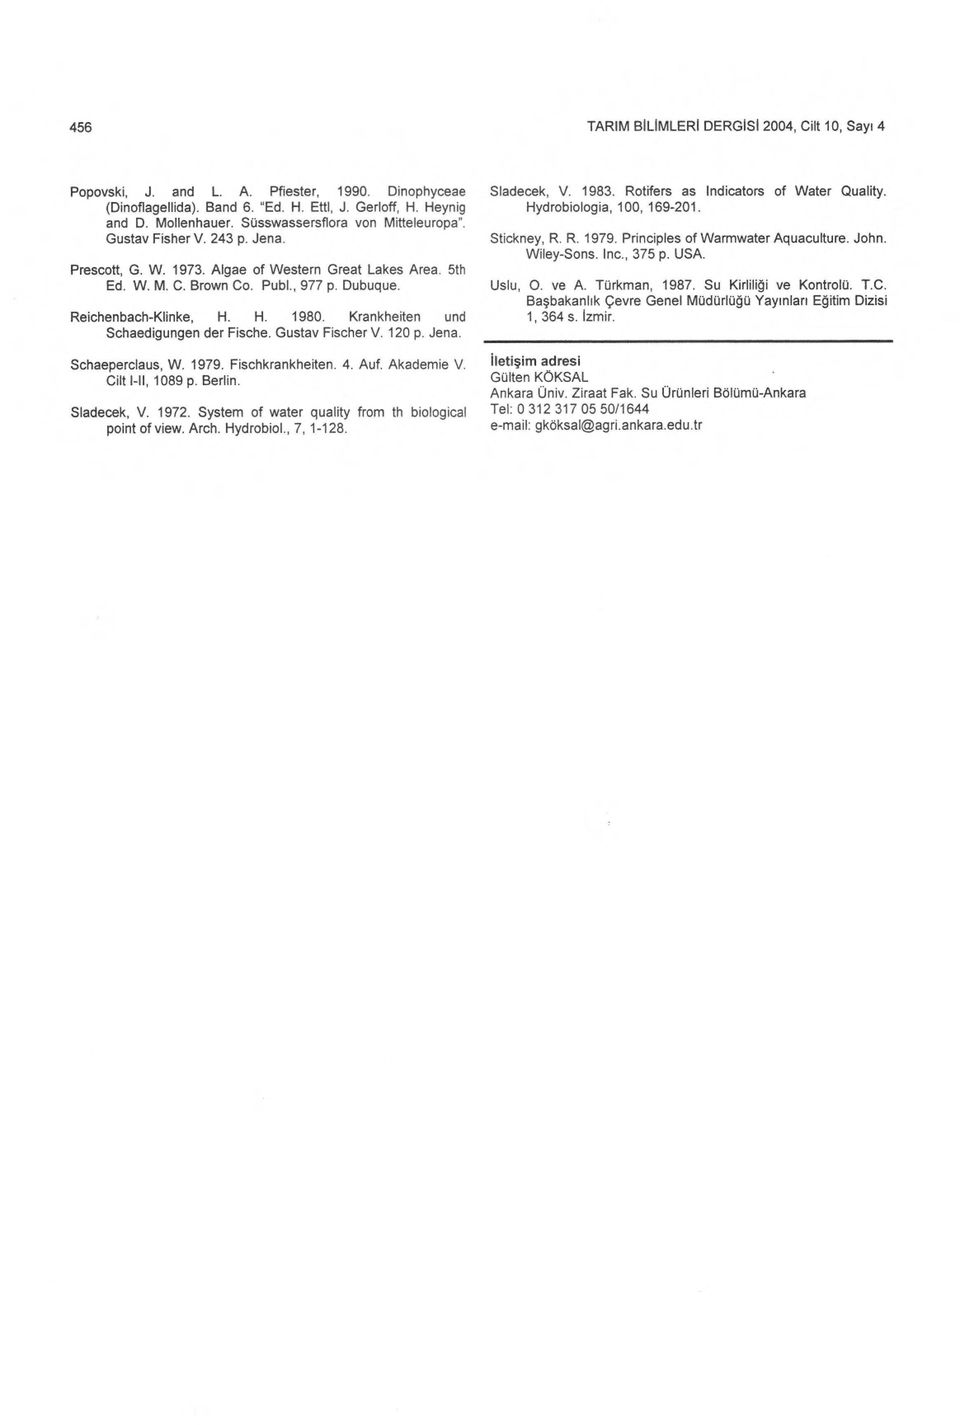 H. 1980. Krankheiten und Schaedigungen der Fische. Gustav Fischer V. 120 p. Jena. Schaeperclaus, W. 1979. Fischkrankheiten. 4. Auf. Akademie V. Cilt I-II, 1089 p. Berlin. Sladecek, V. 1972.